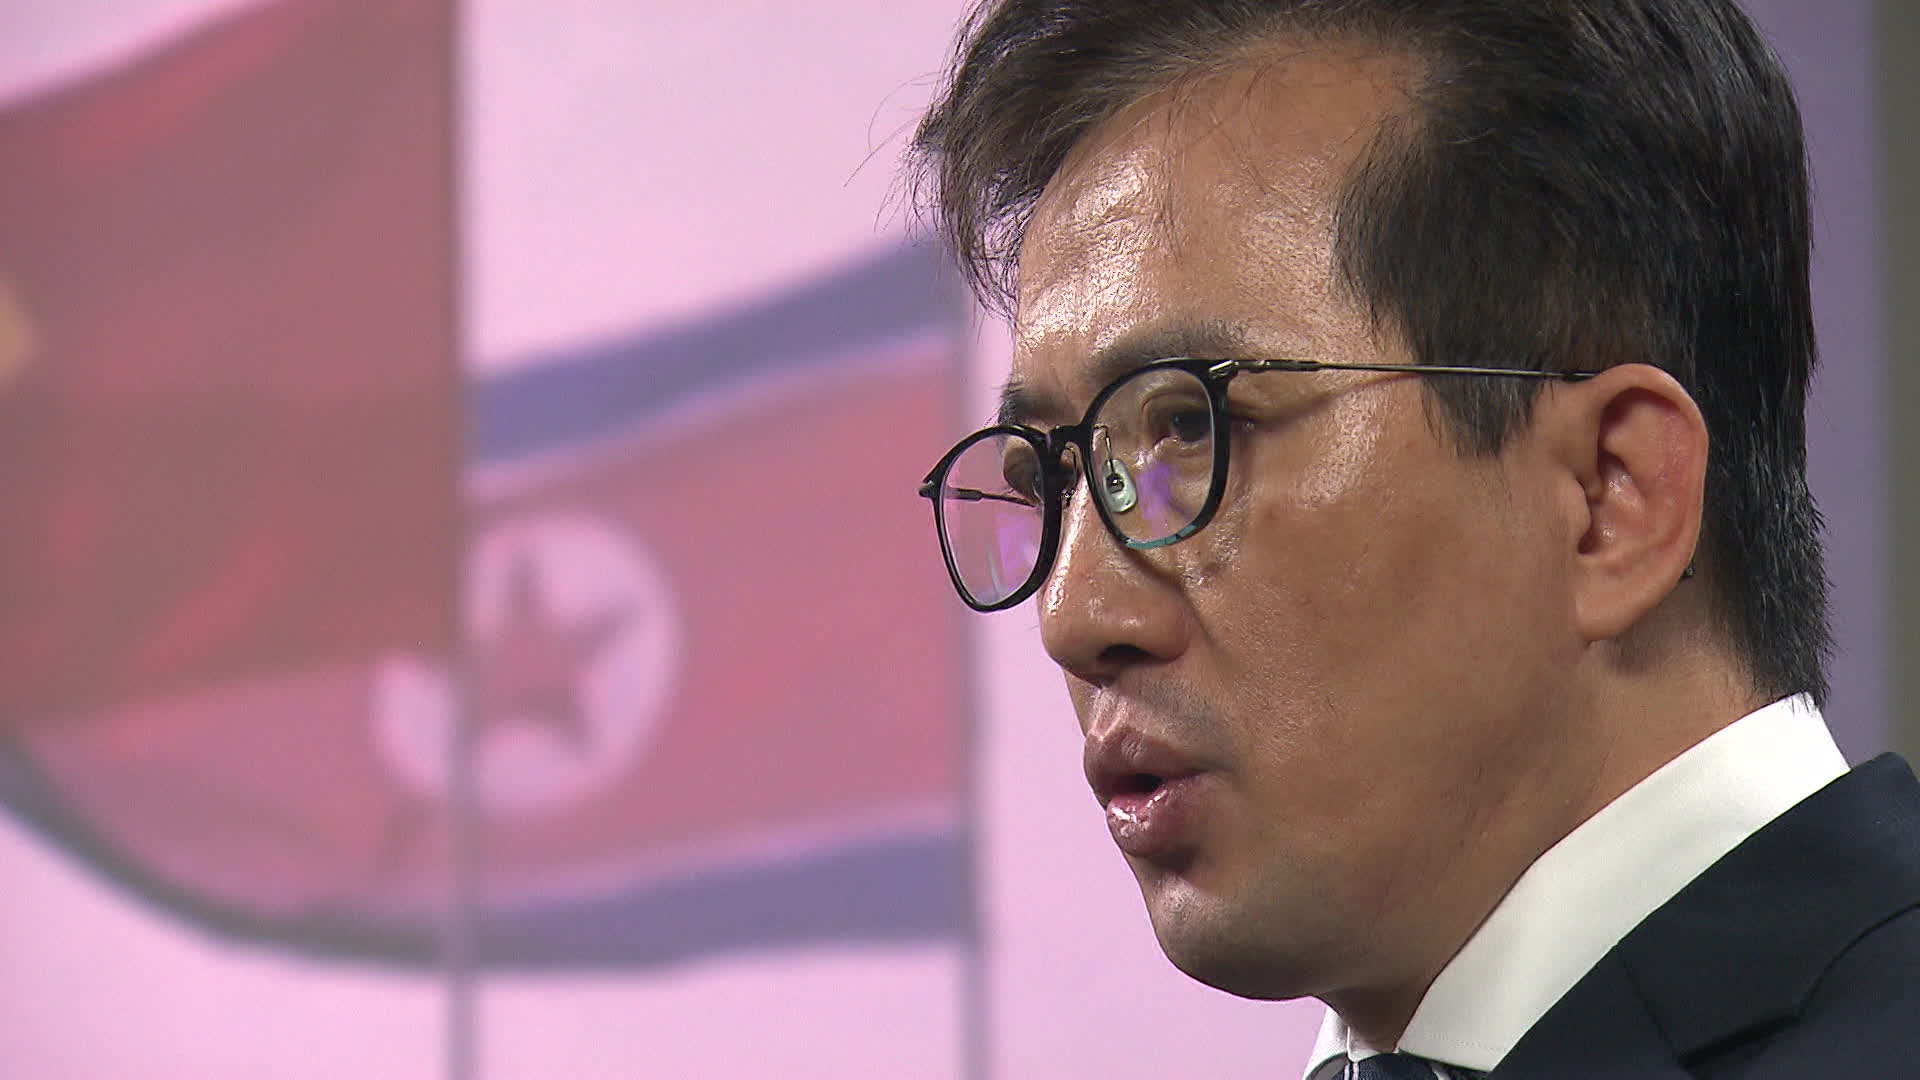 쿠바 주재 북한 대사관에서 근무했던 리일규 전 참사가 KBS 취재진과 인터뷰를 하고 있다.